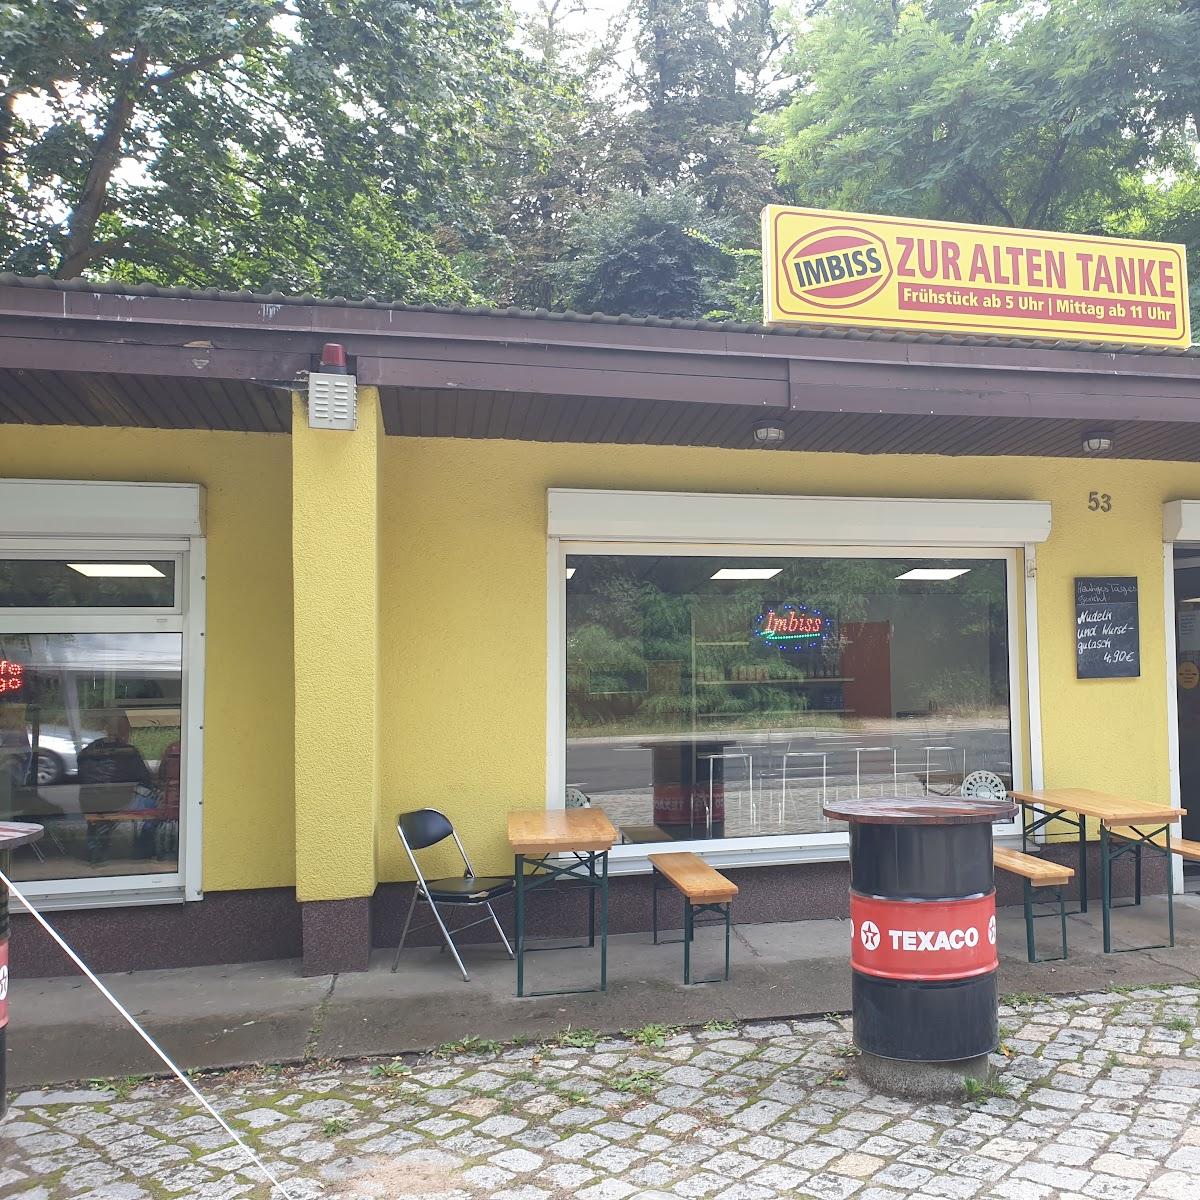 Restaurant "Imbiss  zur alten Tanke " in Müncheberg